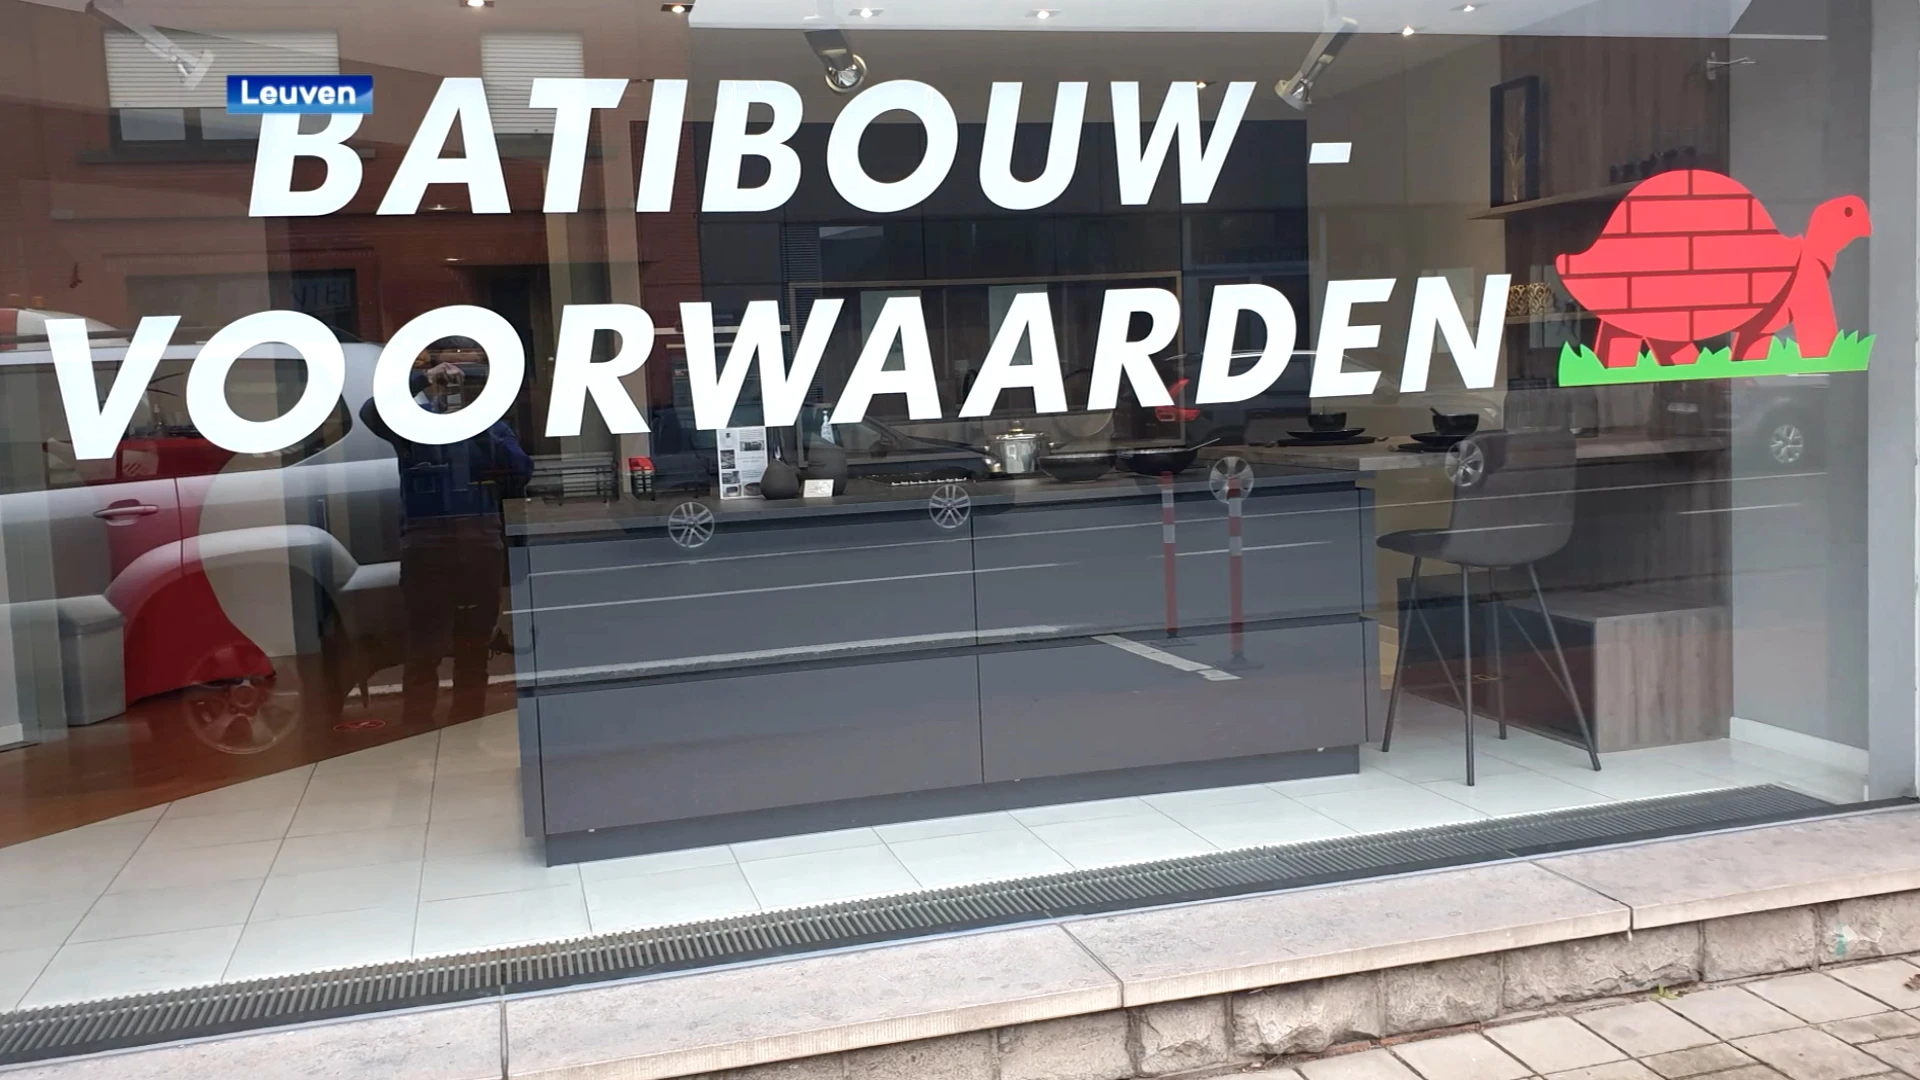 Leuvense keukenwinkel moet schadevergoeding betalen aan BATIBOUW: "Zonder standje mag je logo en naam niet gebruiken"